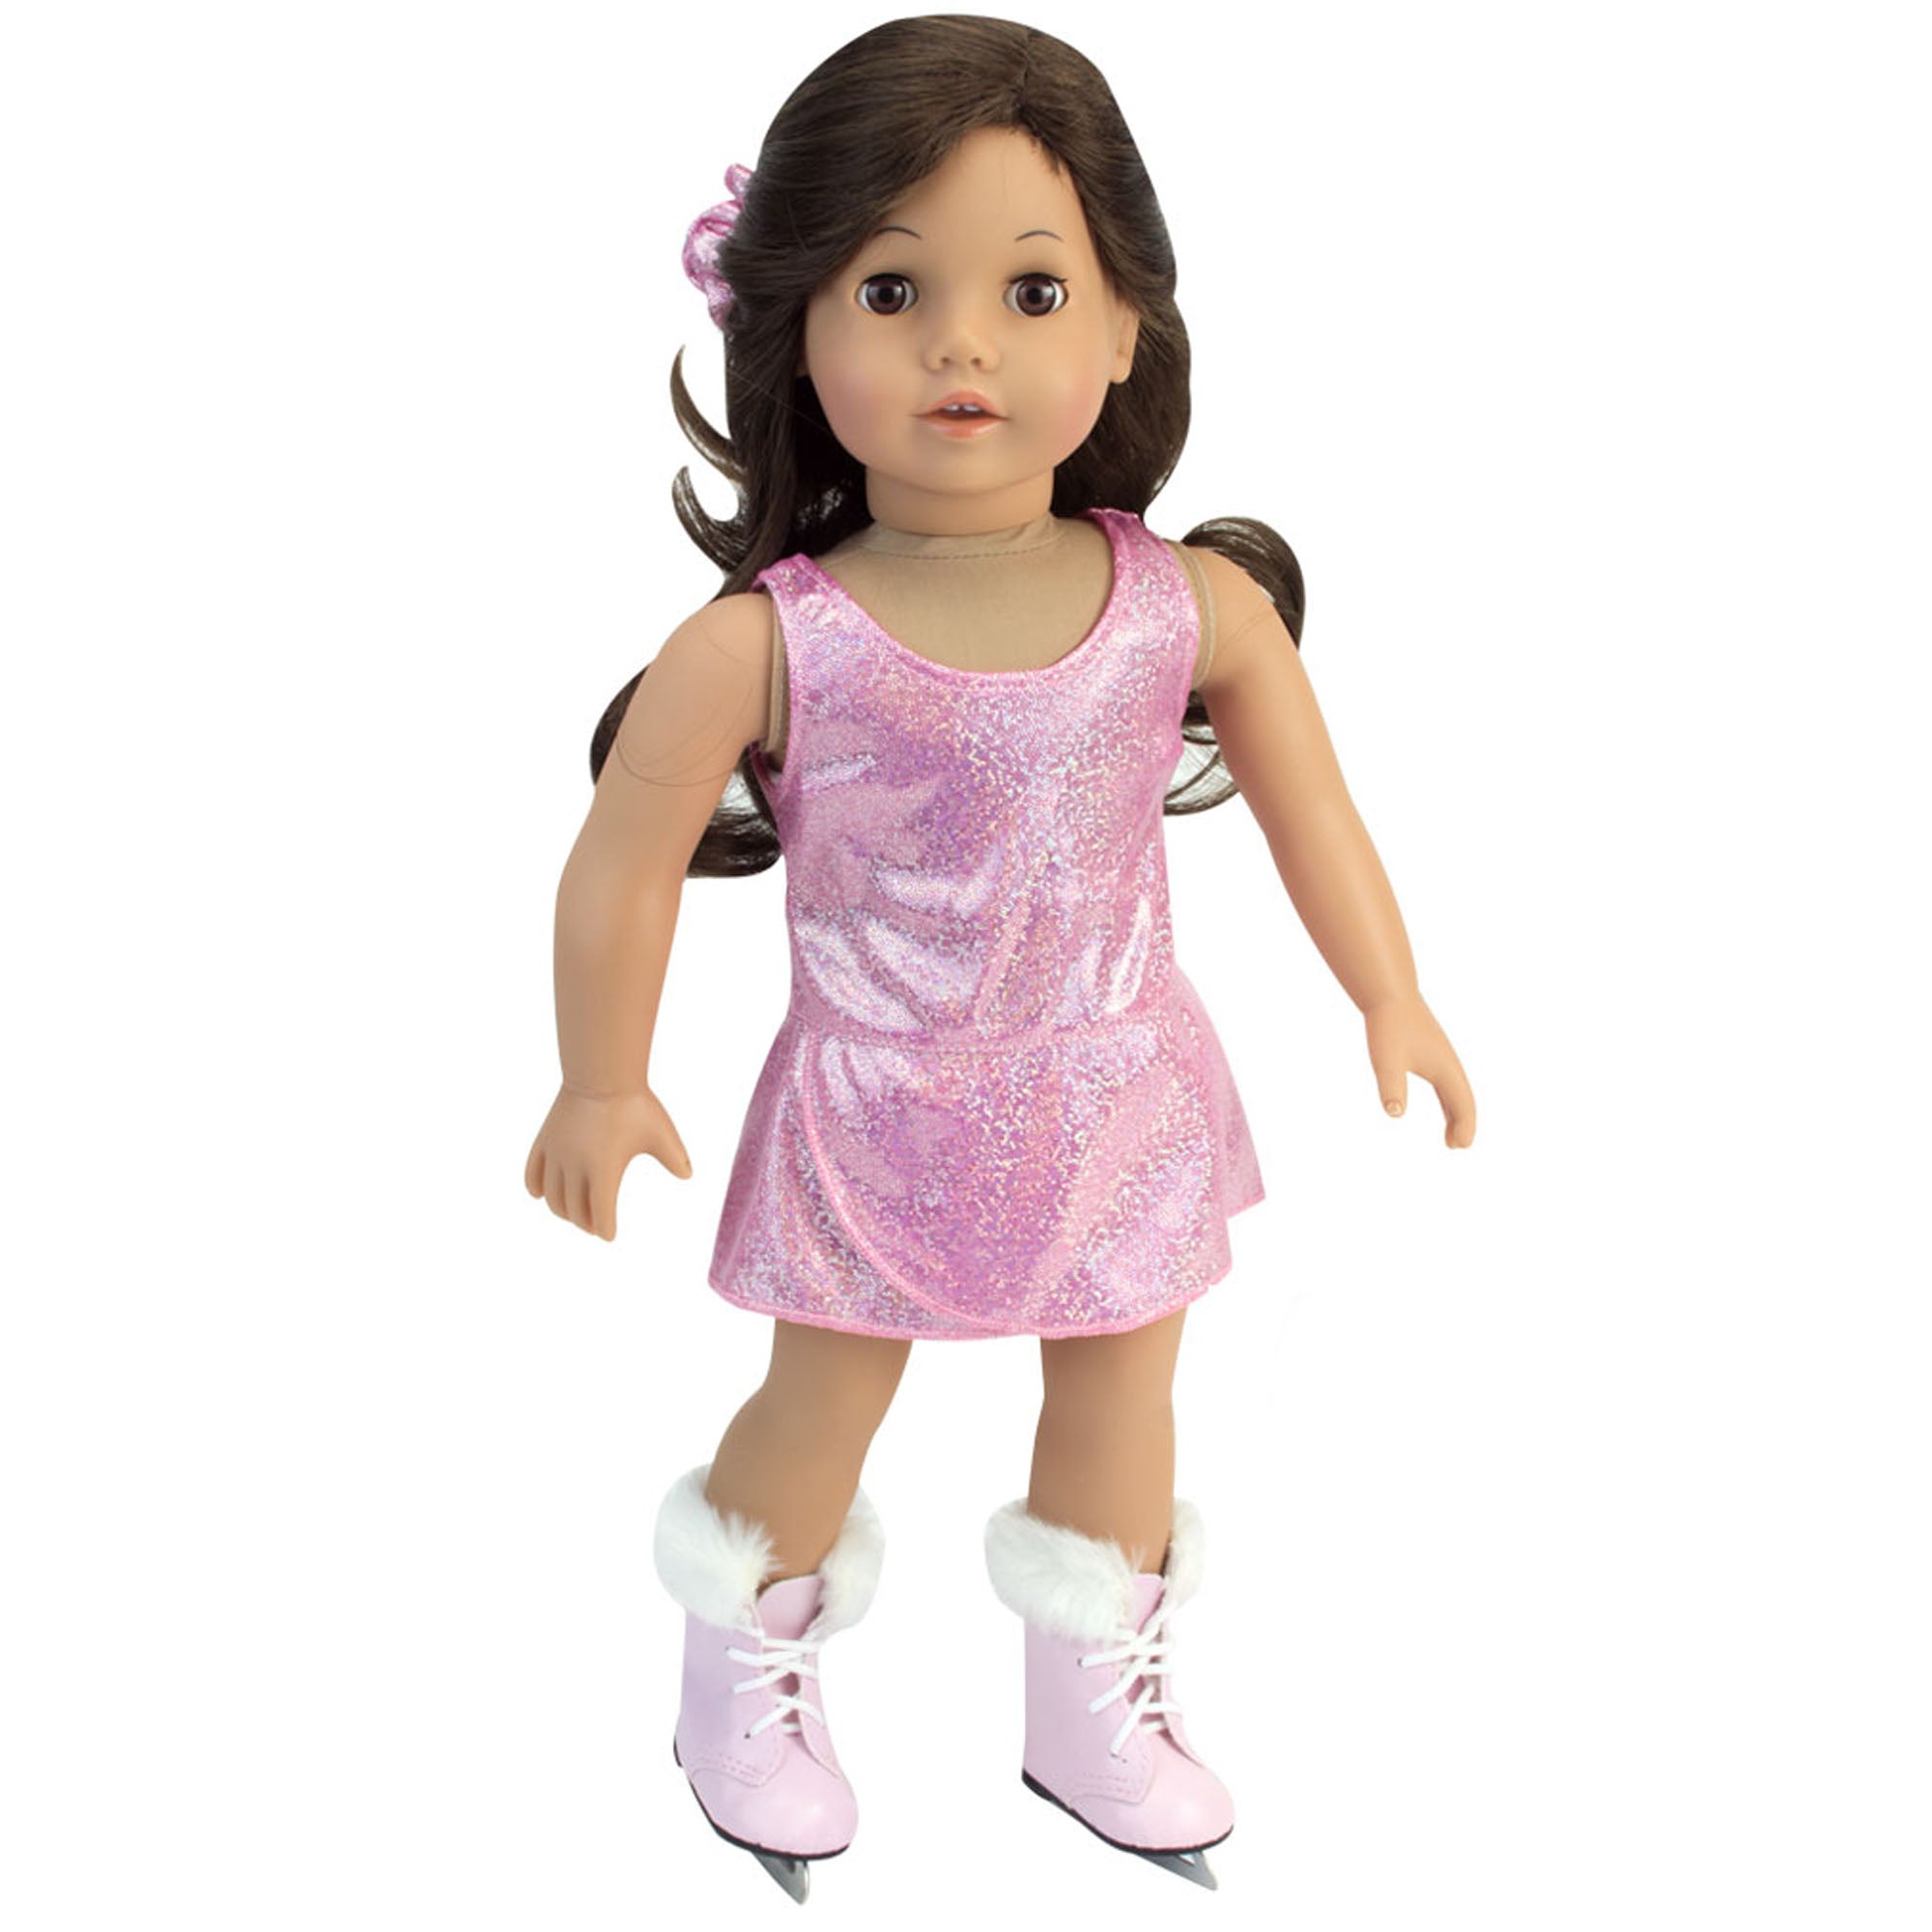 Sophia's Figure Skater Dress, Hair Scrunchie and Ice Skates for 18" Dolls, Pink